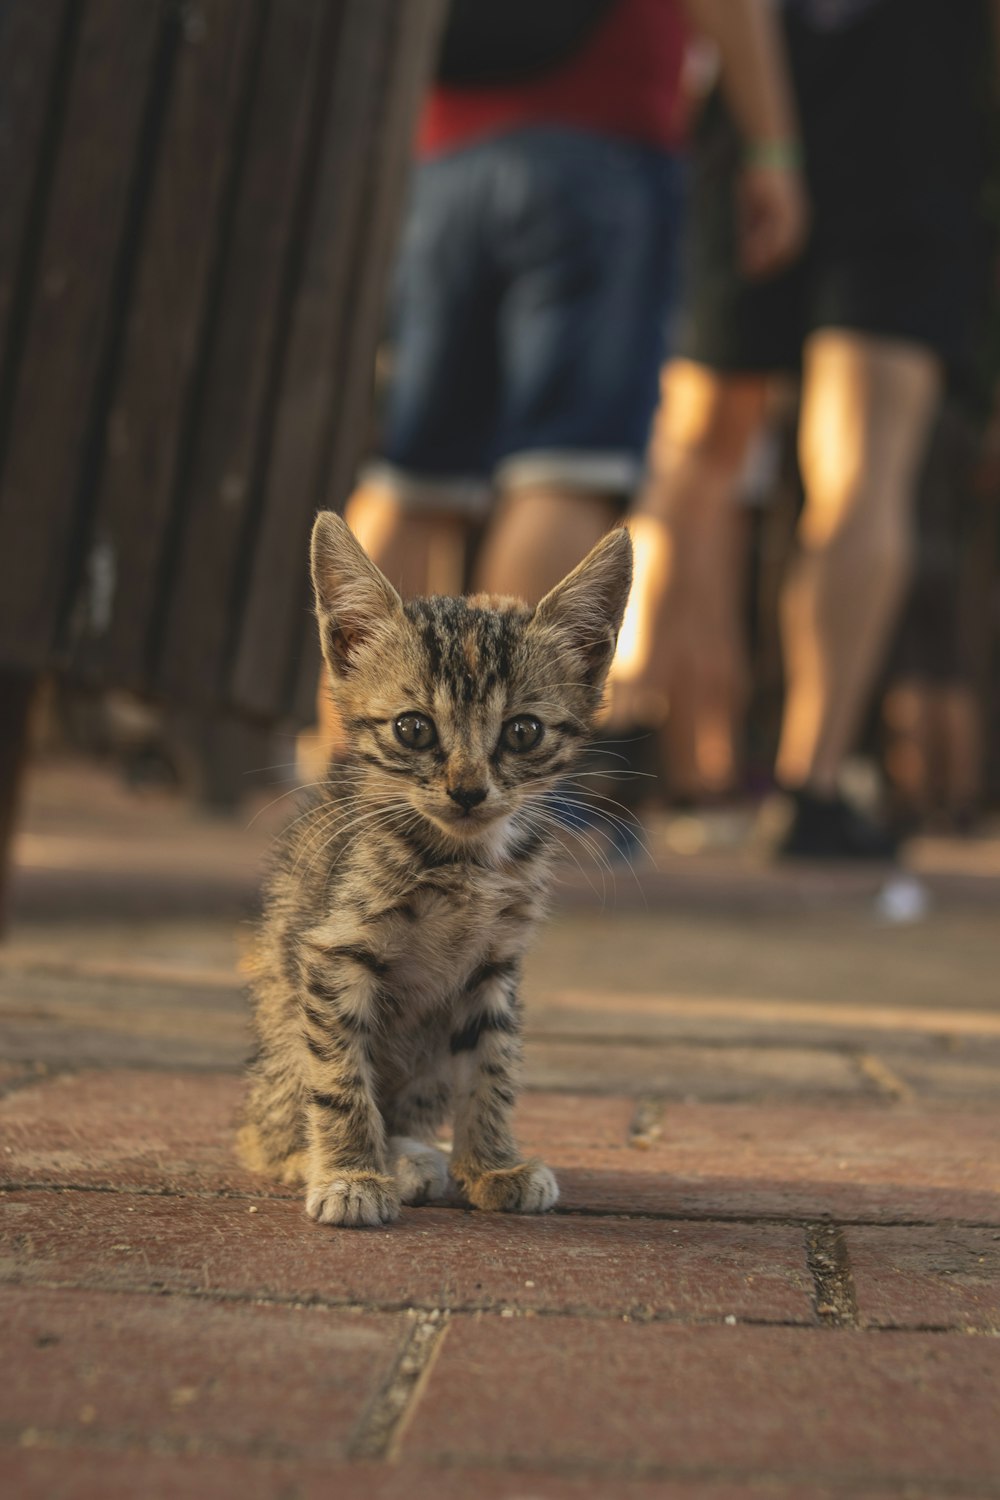 a kitten walking on a sidewalk